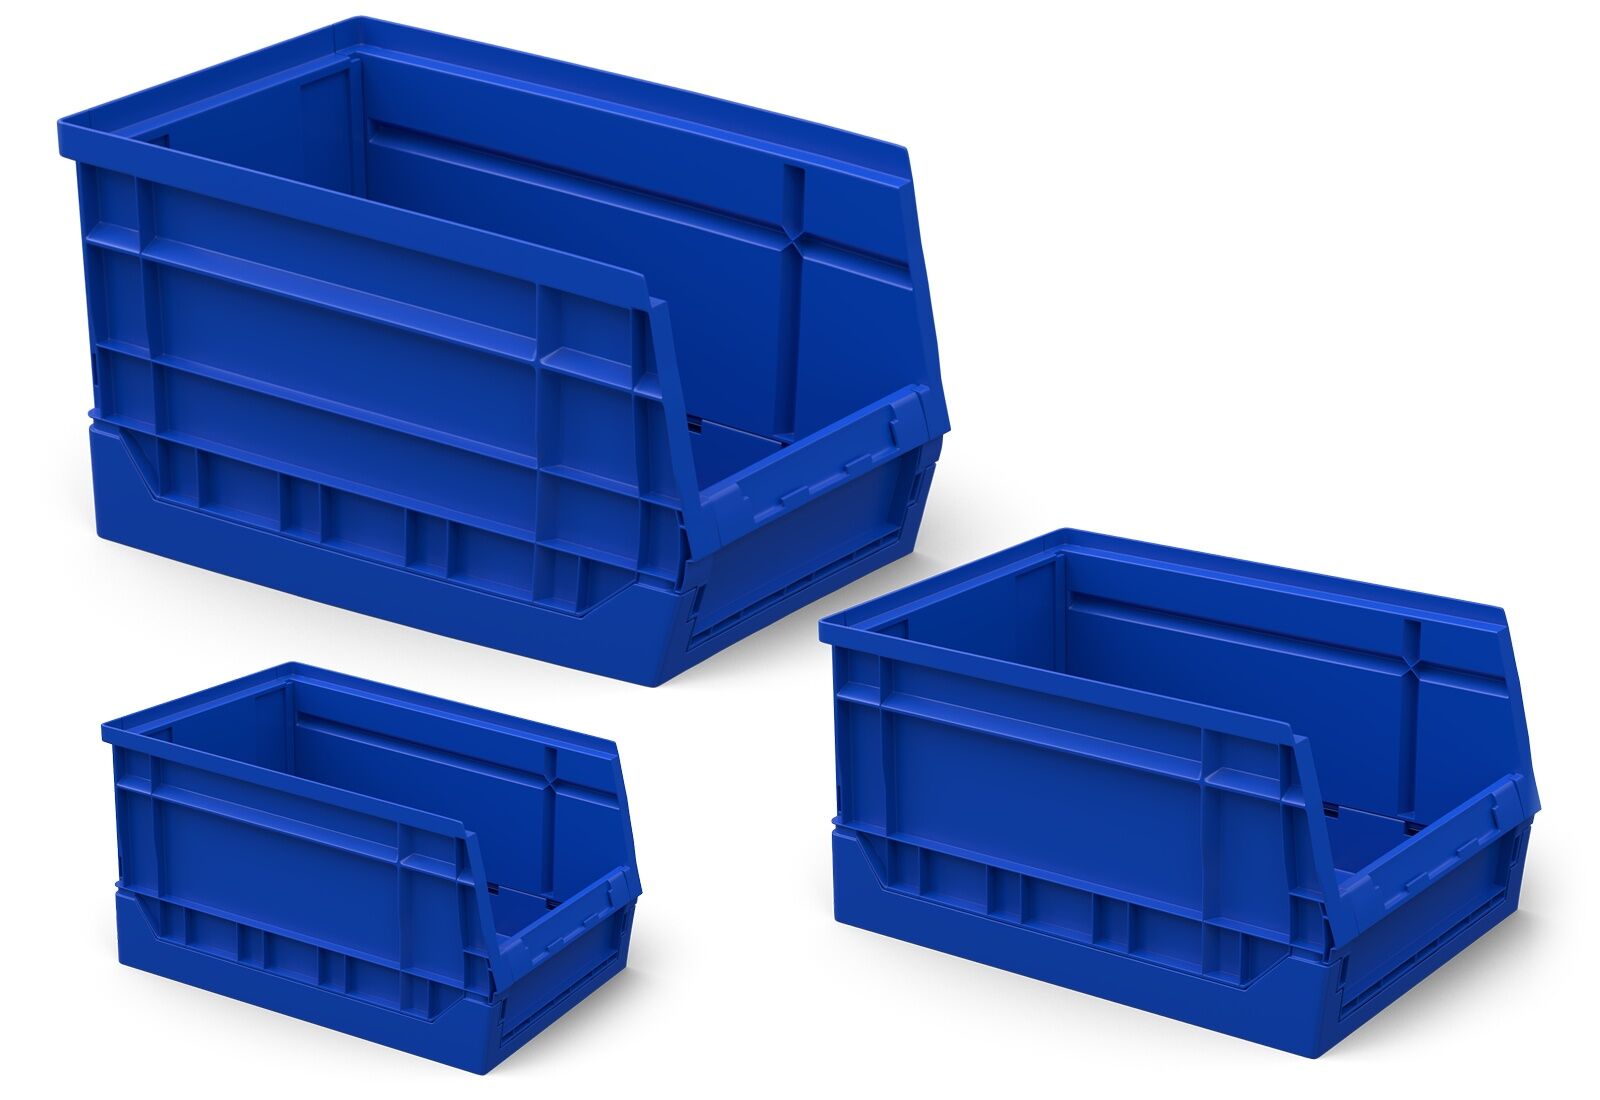 3 m estantería de baldas FB200 / 50 cm profundidad / 1,8 m altura / 4  niveles / baldas acero / carga por balda 200 kg